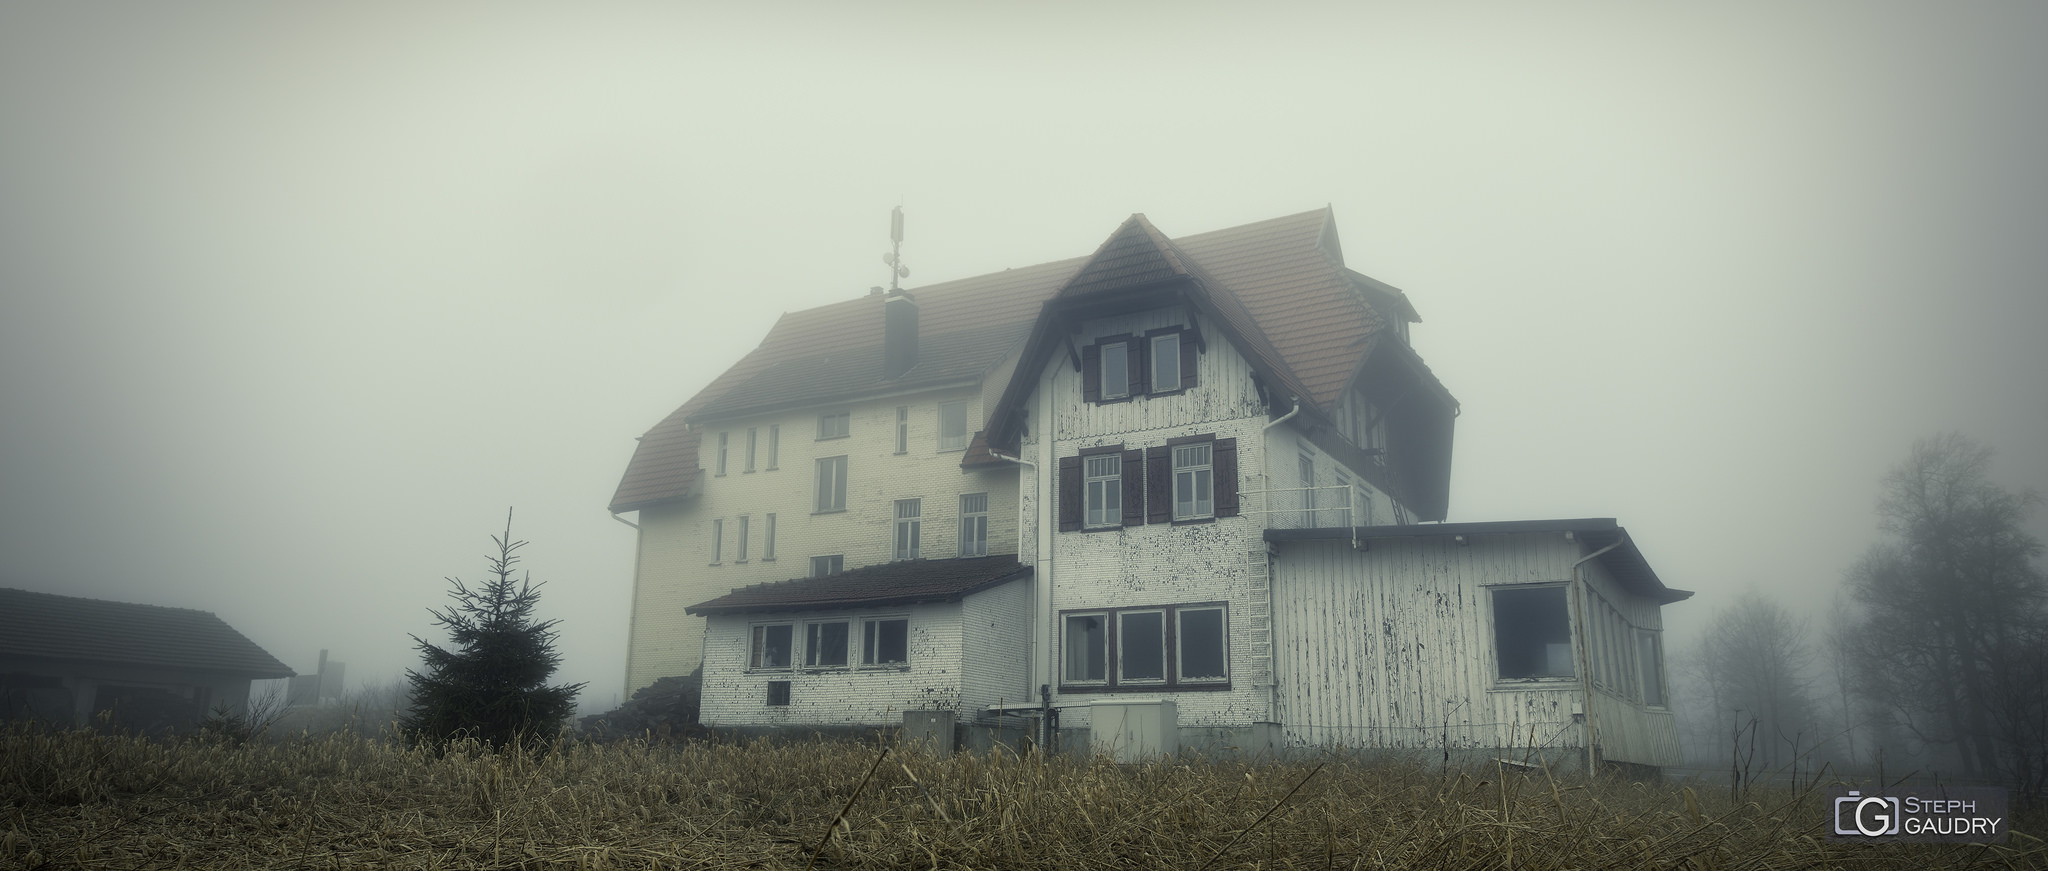 Haunted house in the mist [Klicken Sie hier, um die Diashow zu starten]